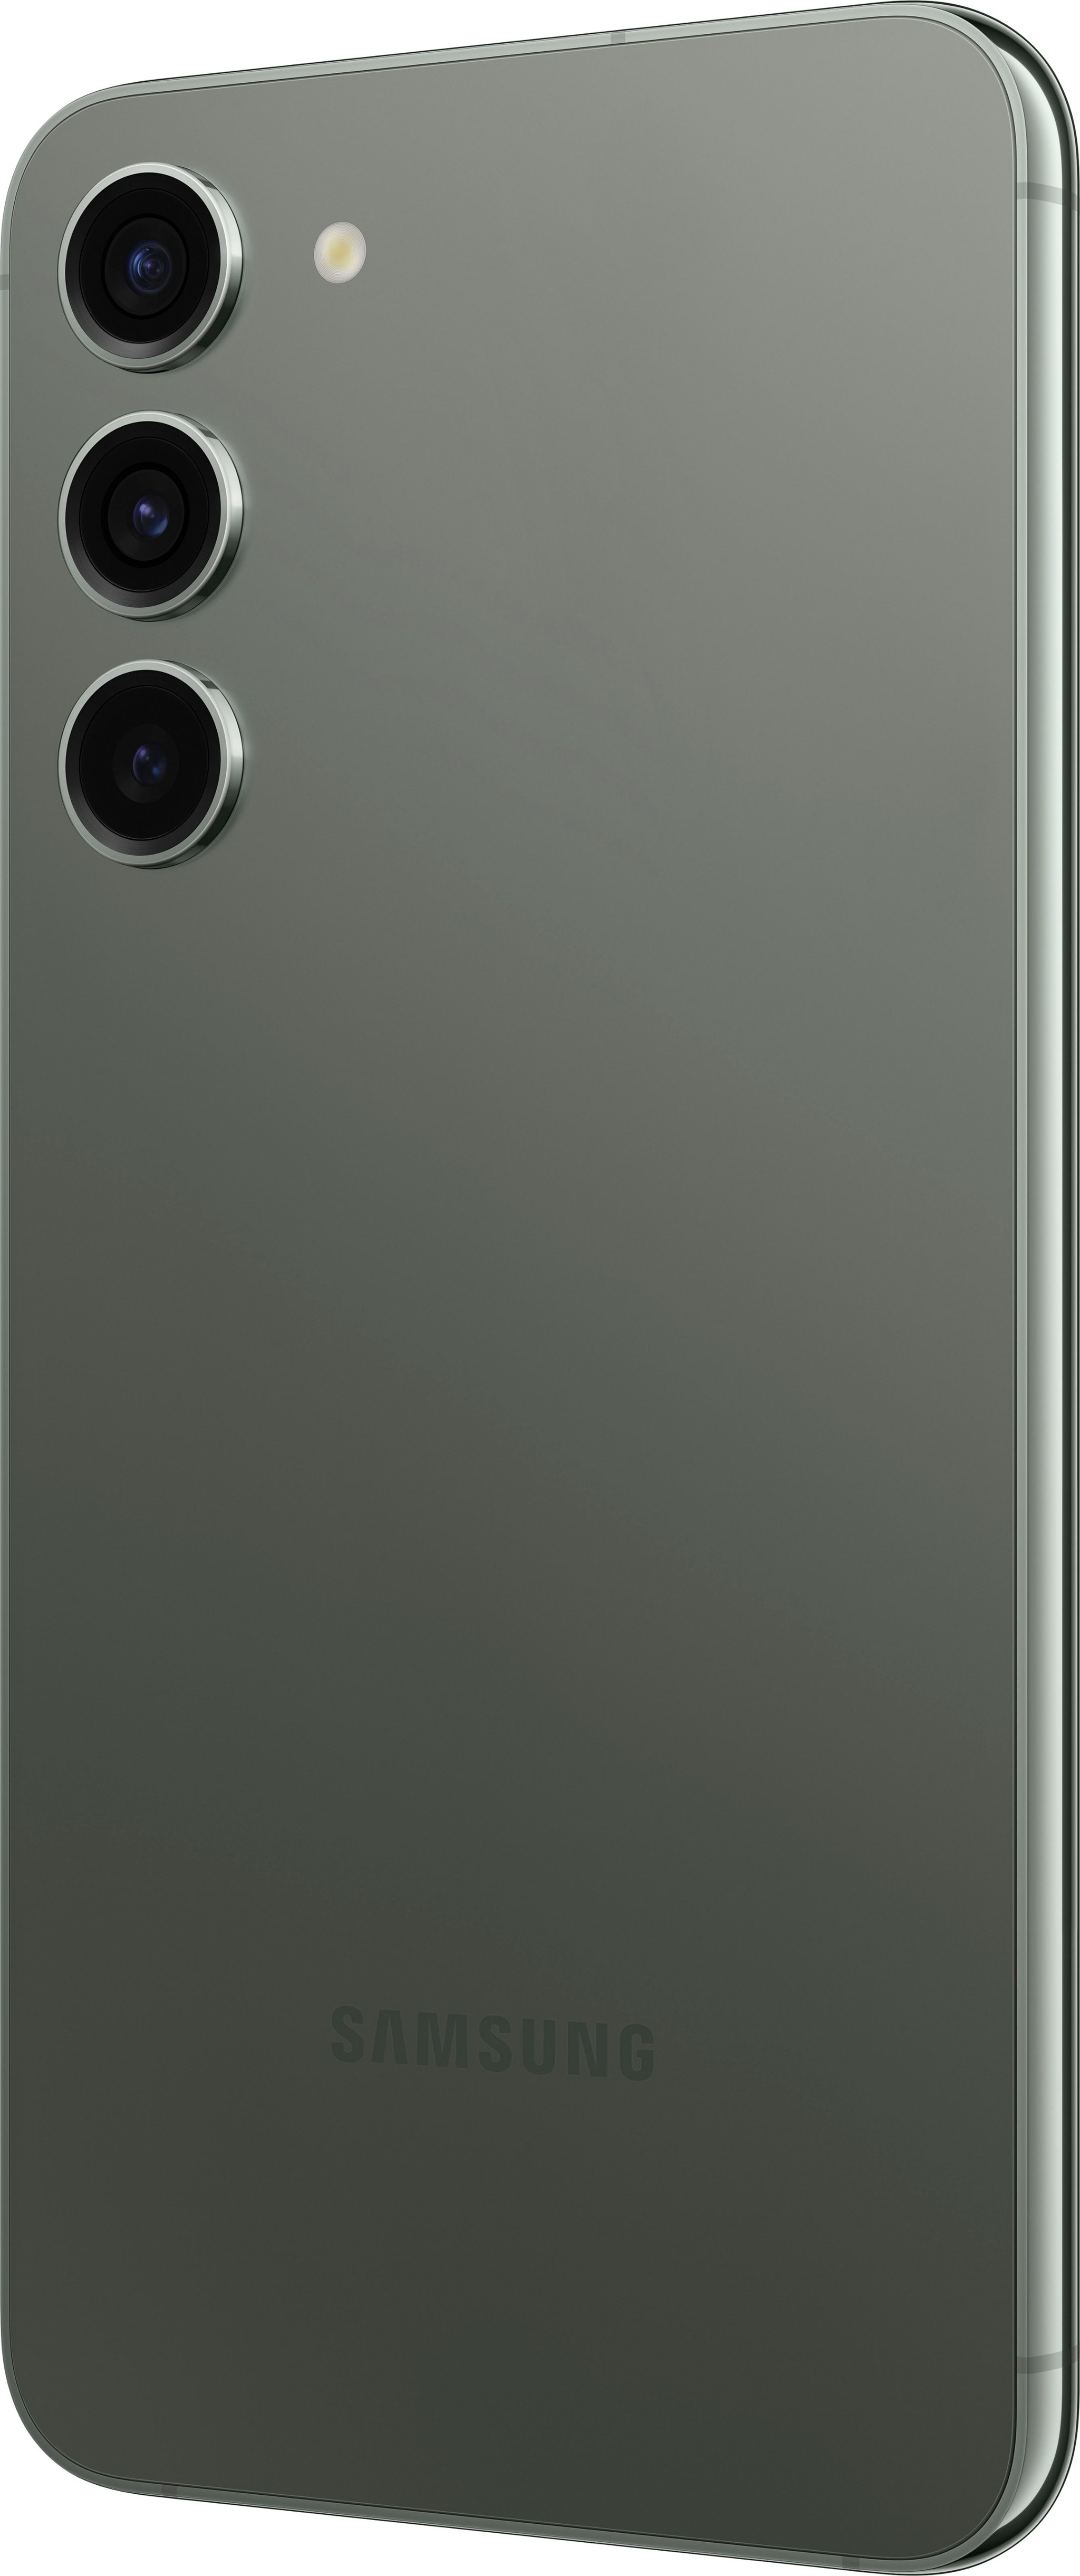 Samsung Galaxy S23 + Plus - 256GB - All Color - Verizon Locked - Excellent